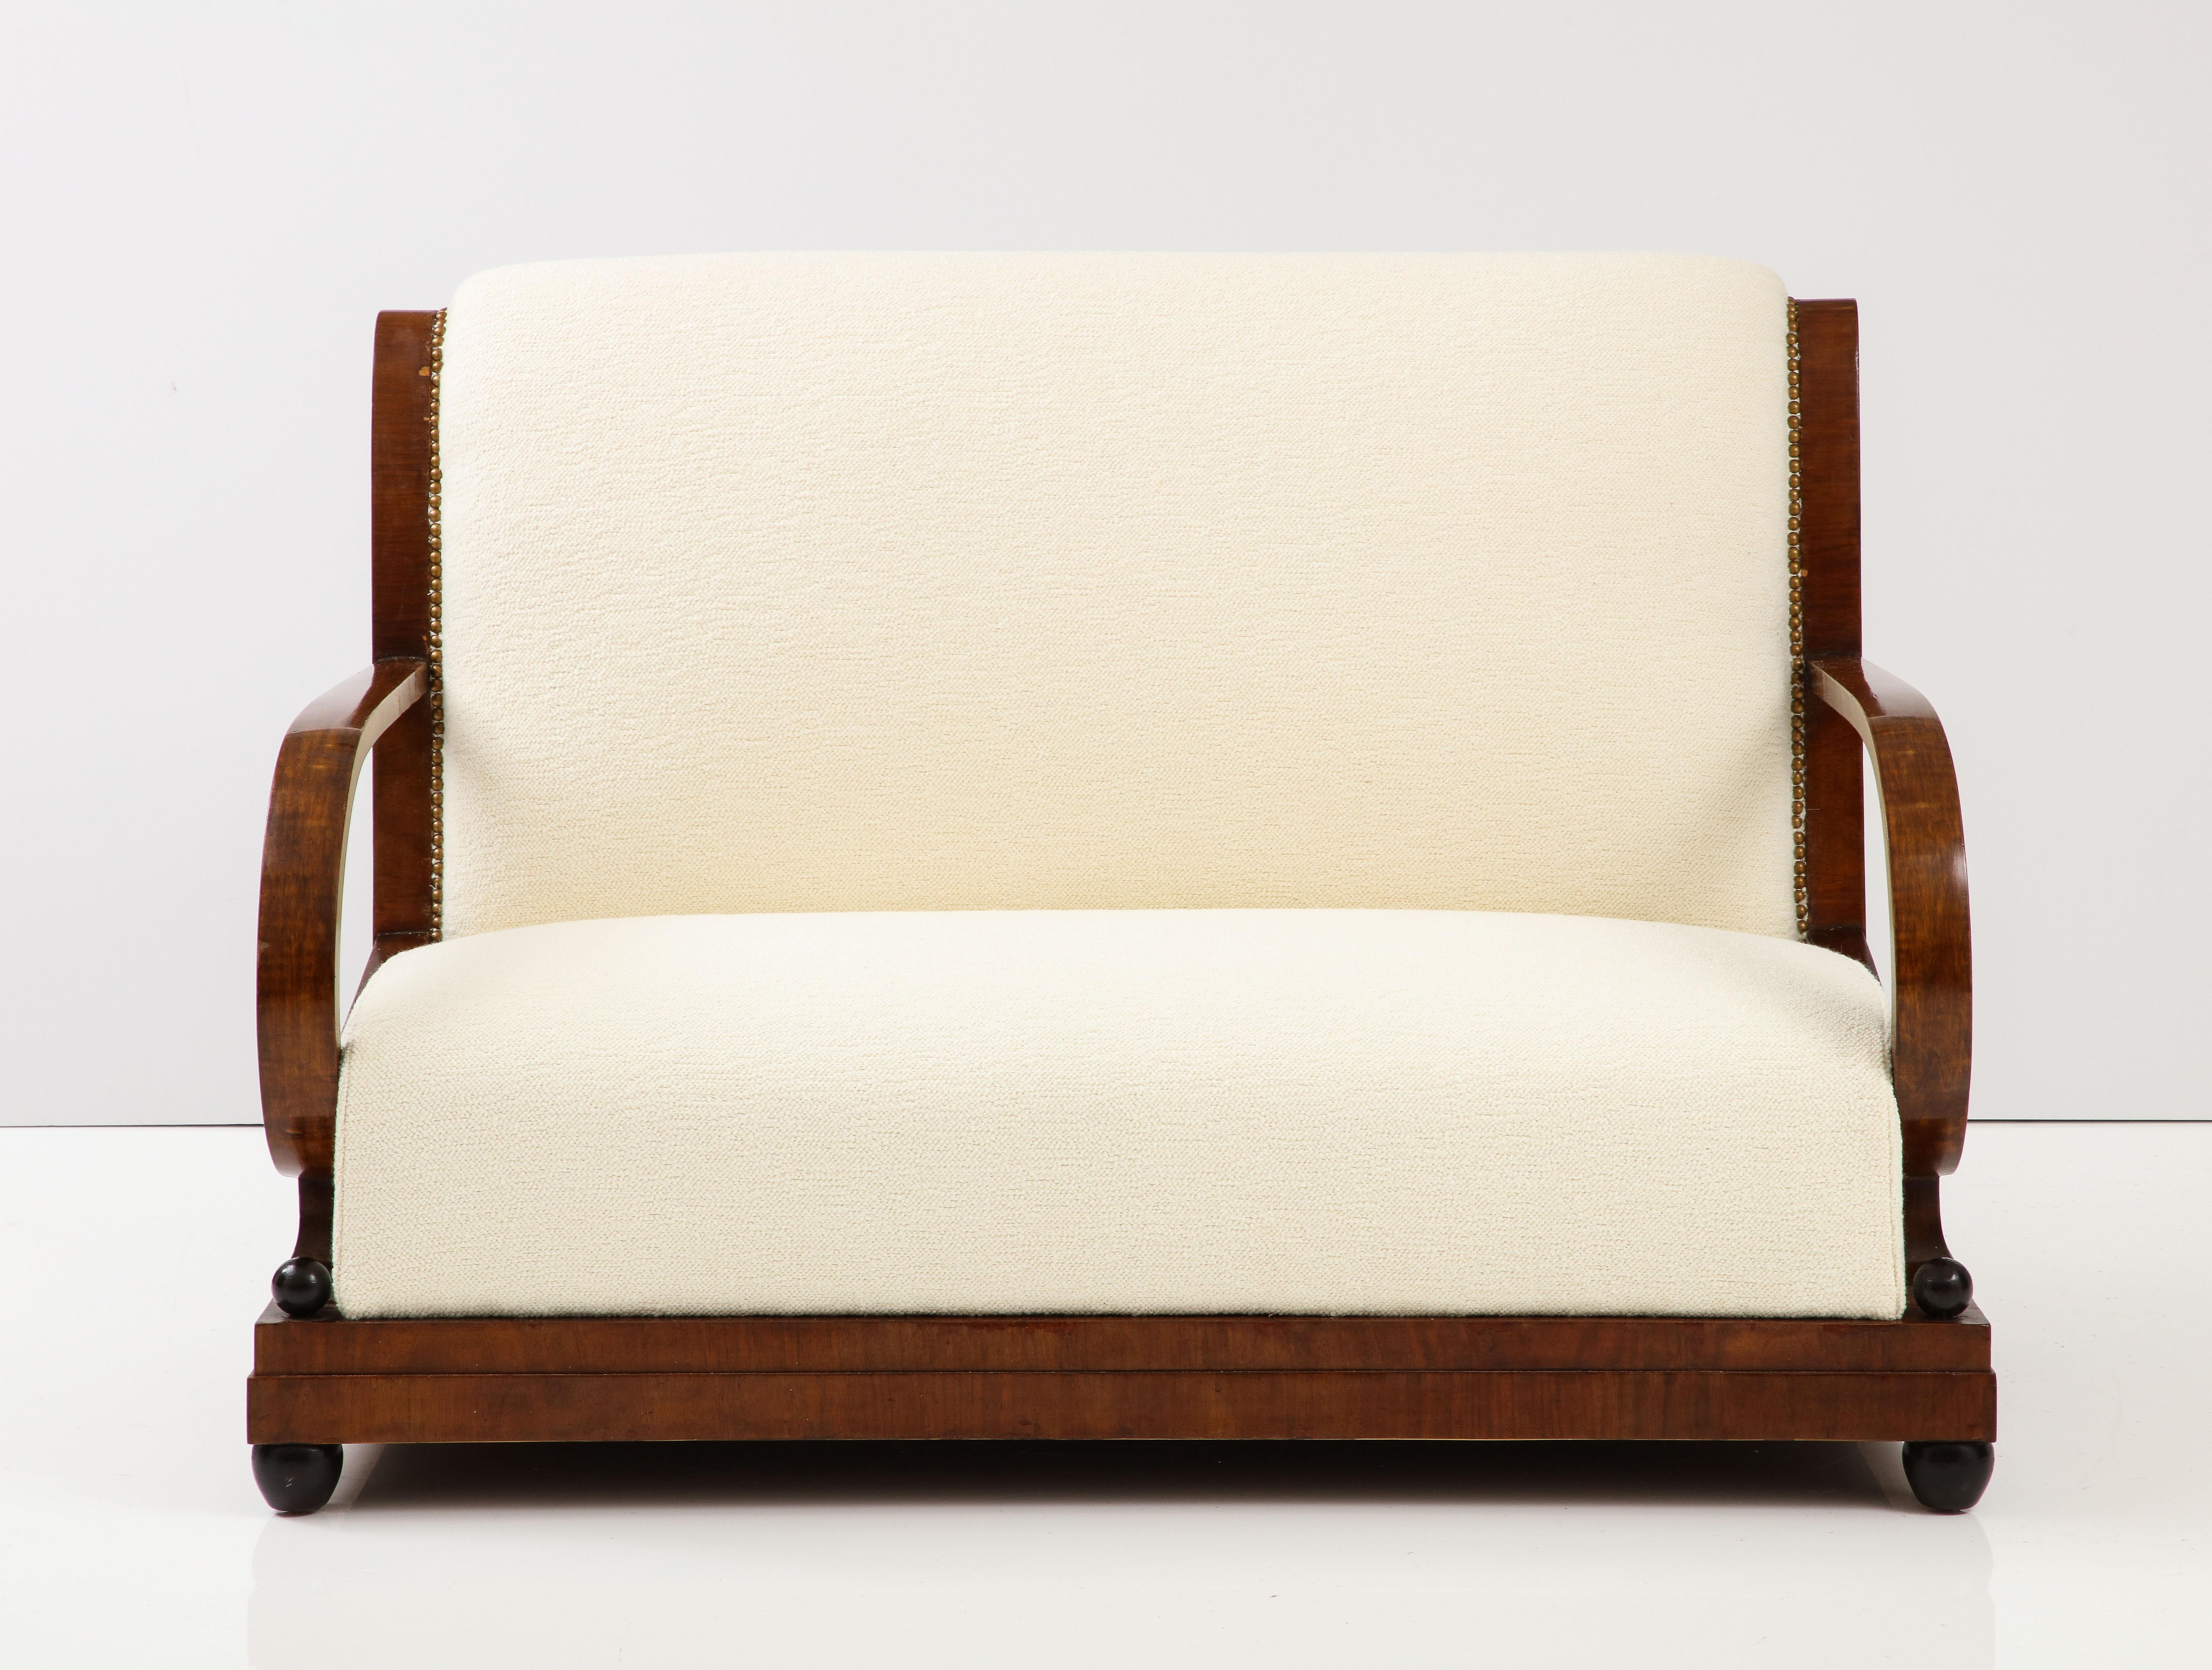 Ein italienisches Sofa aus den 1920er Jahren aus der frühen Art-déco-Zeit in Norditalien. Das reiche Nussbaumholz ist fein geschnitzt und unterstreicht die natürliche Schönheit des Holzes. Die Rückenlehne des Sofas ist anmutig geschwungen und